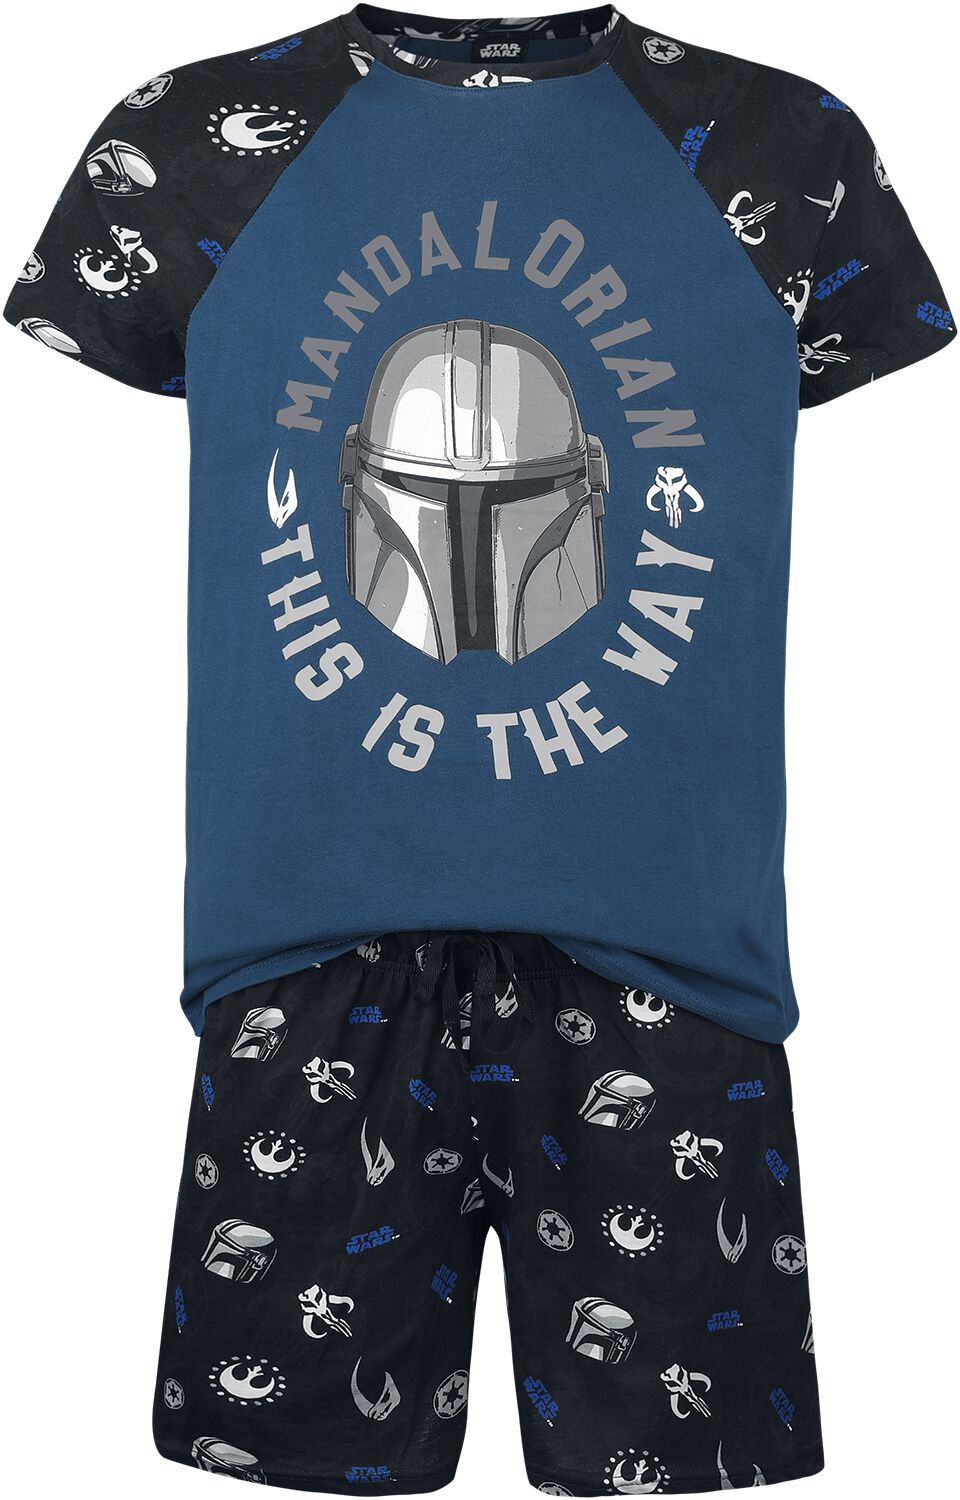 Star Wars Schlafanzug - The Mandalorian - This Is The Way - M - für Männer - Größe M - multicolor  - Lizenzierter Fanartikel